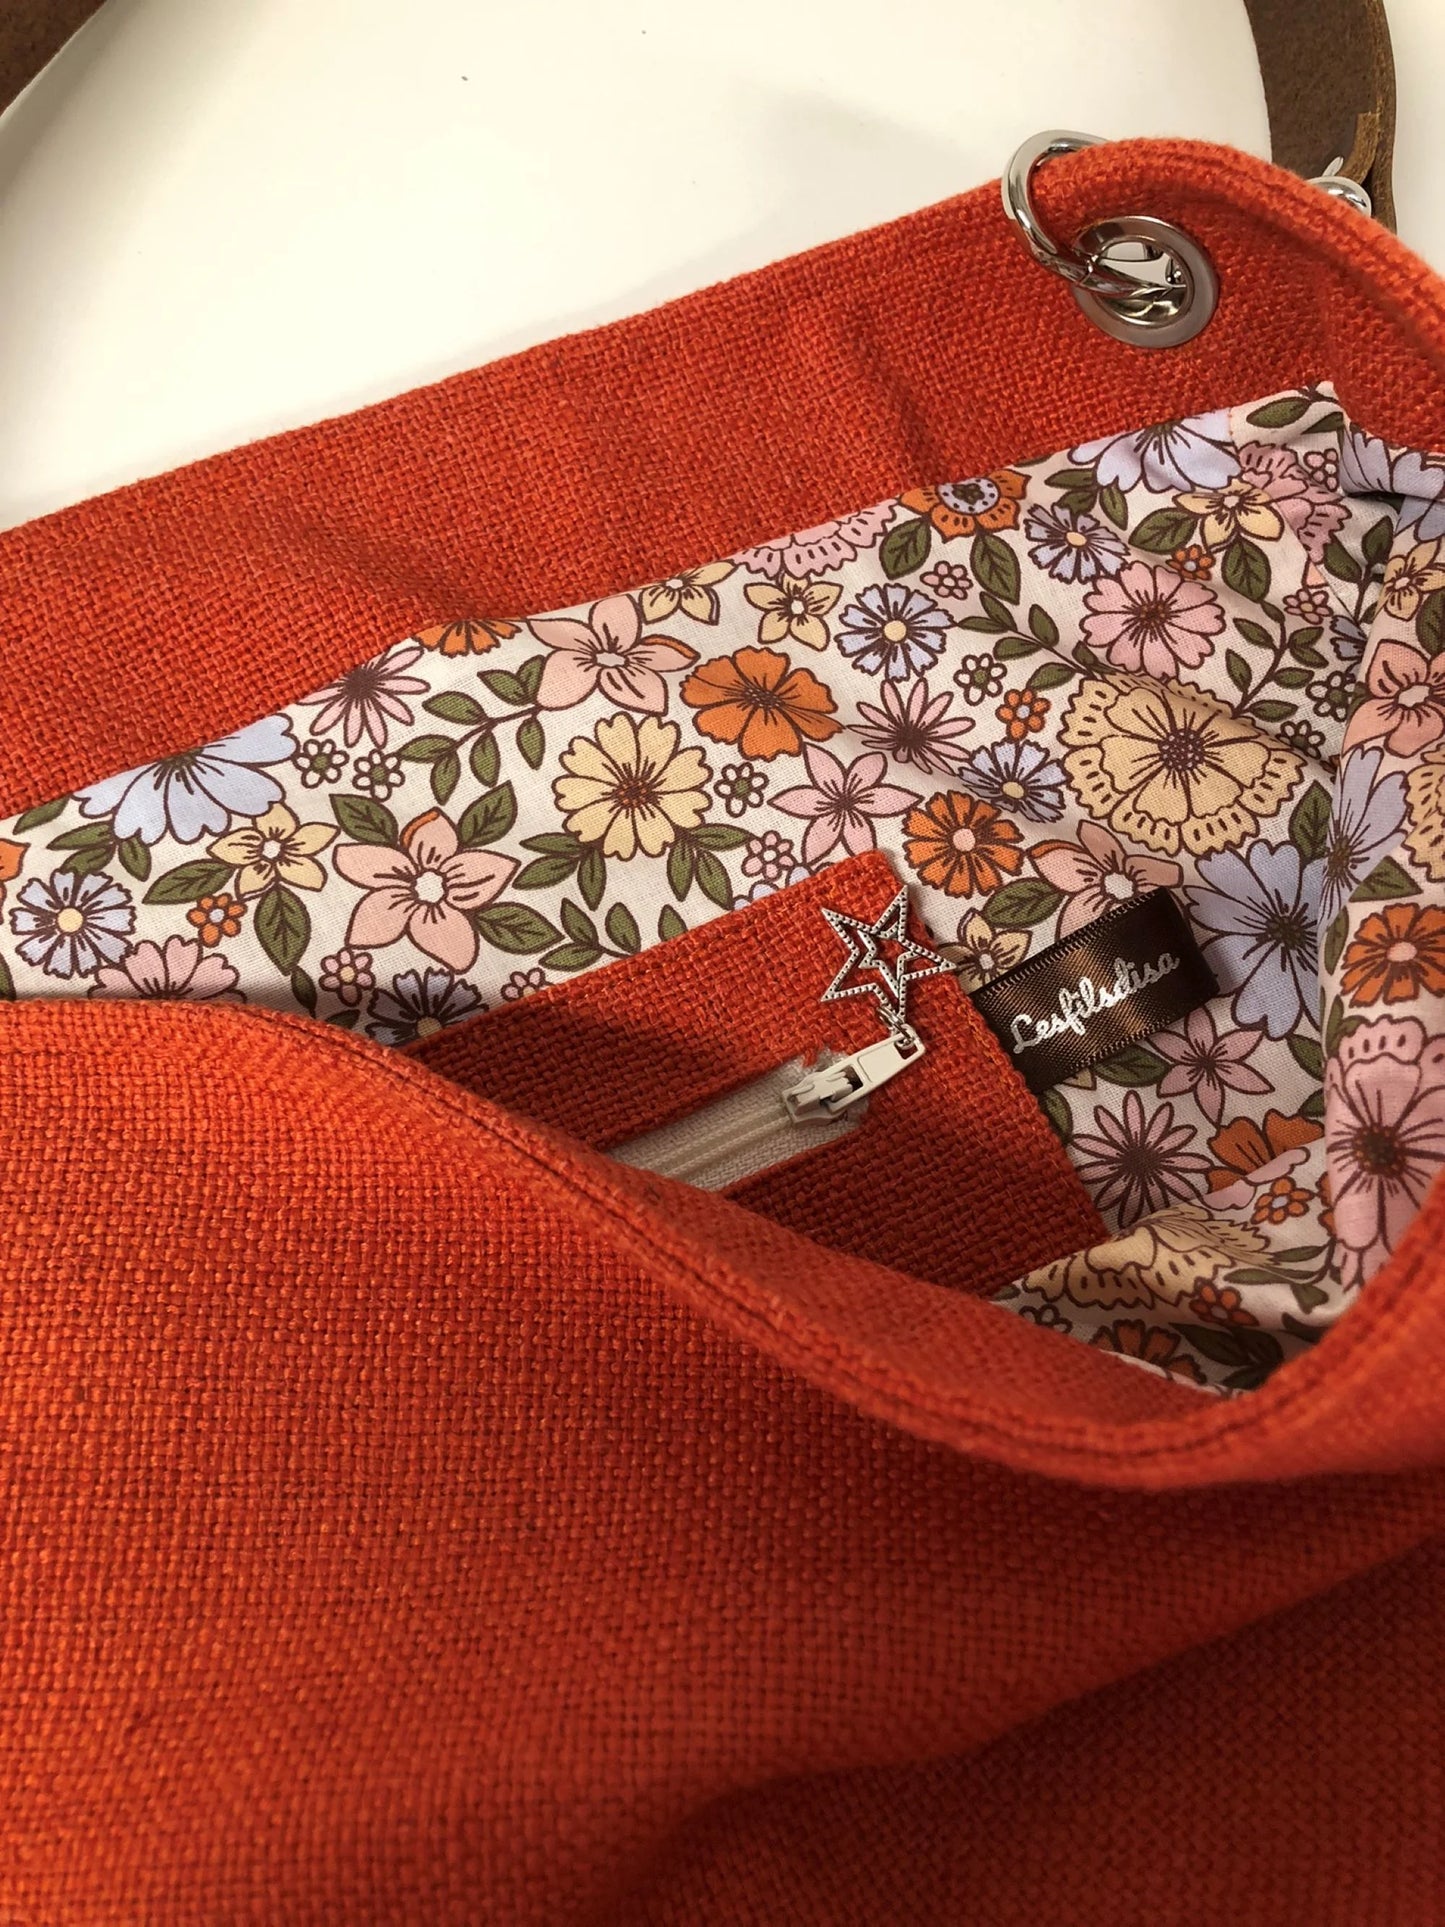 La poche intérieure zippée du sac Hobo en lin orange et son anse en cuir marron.